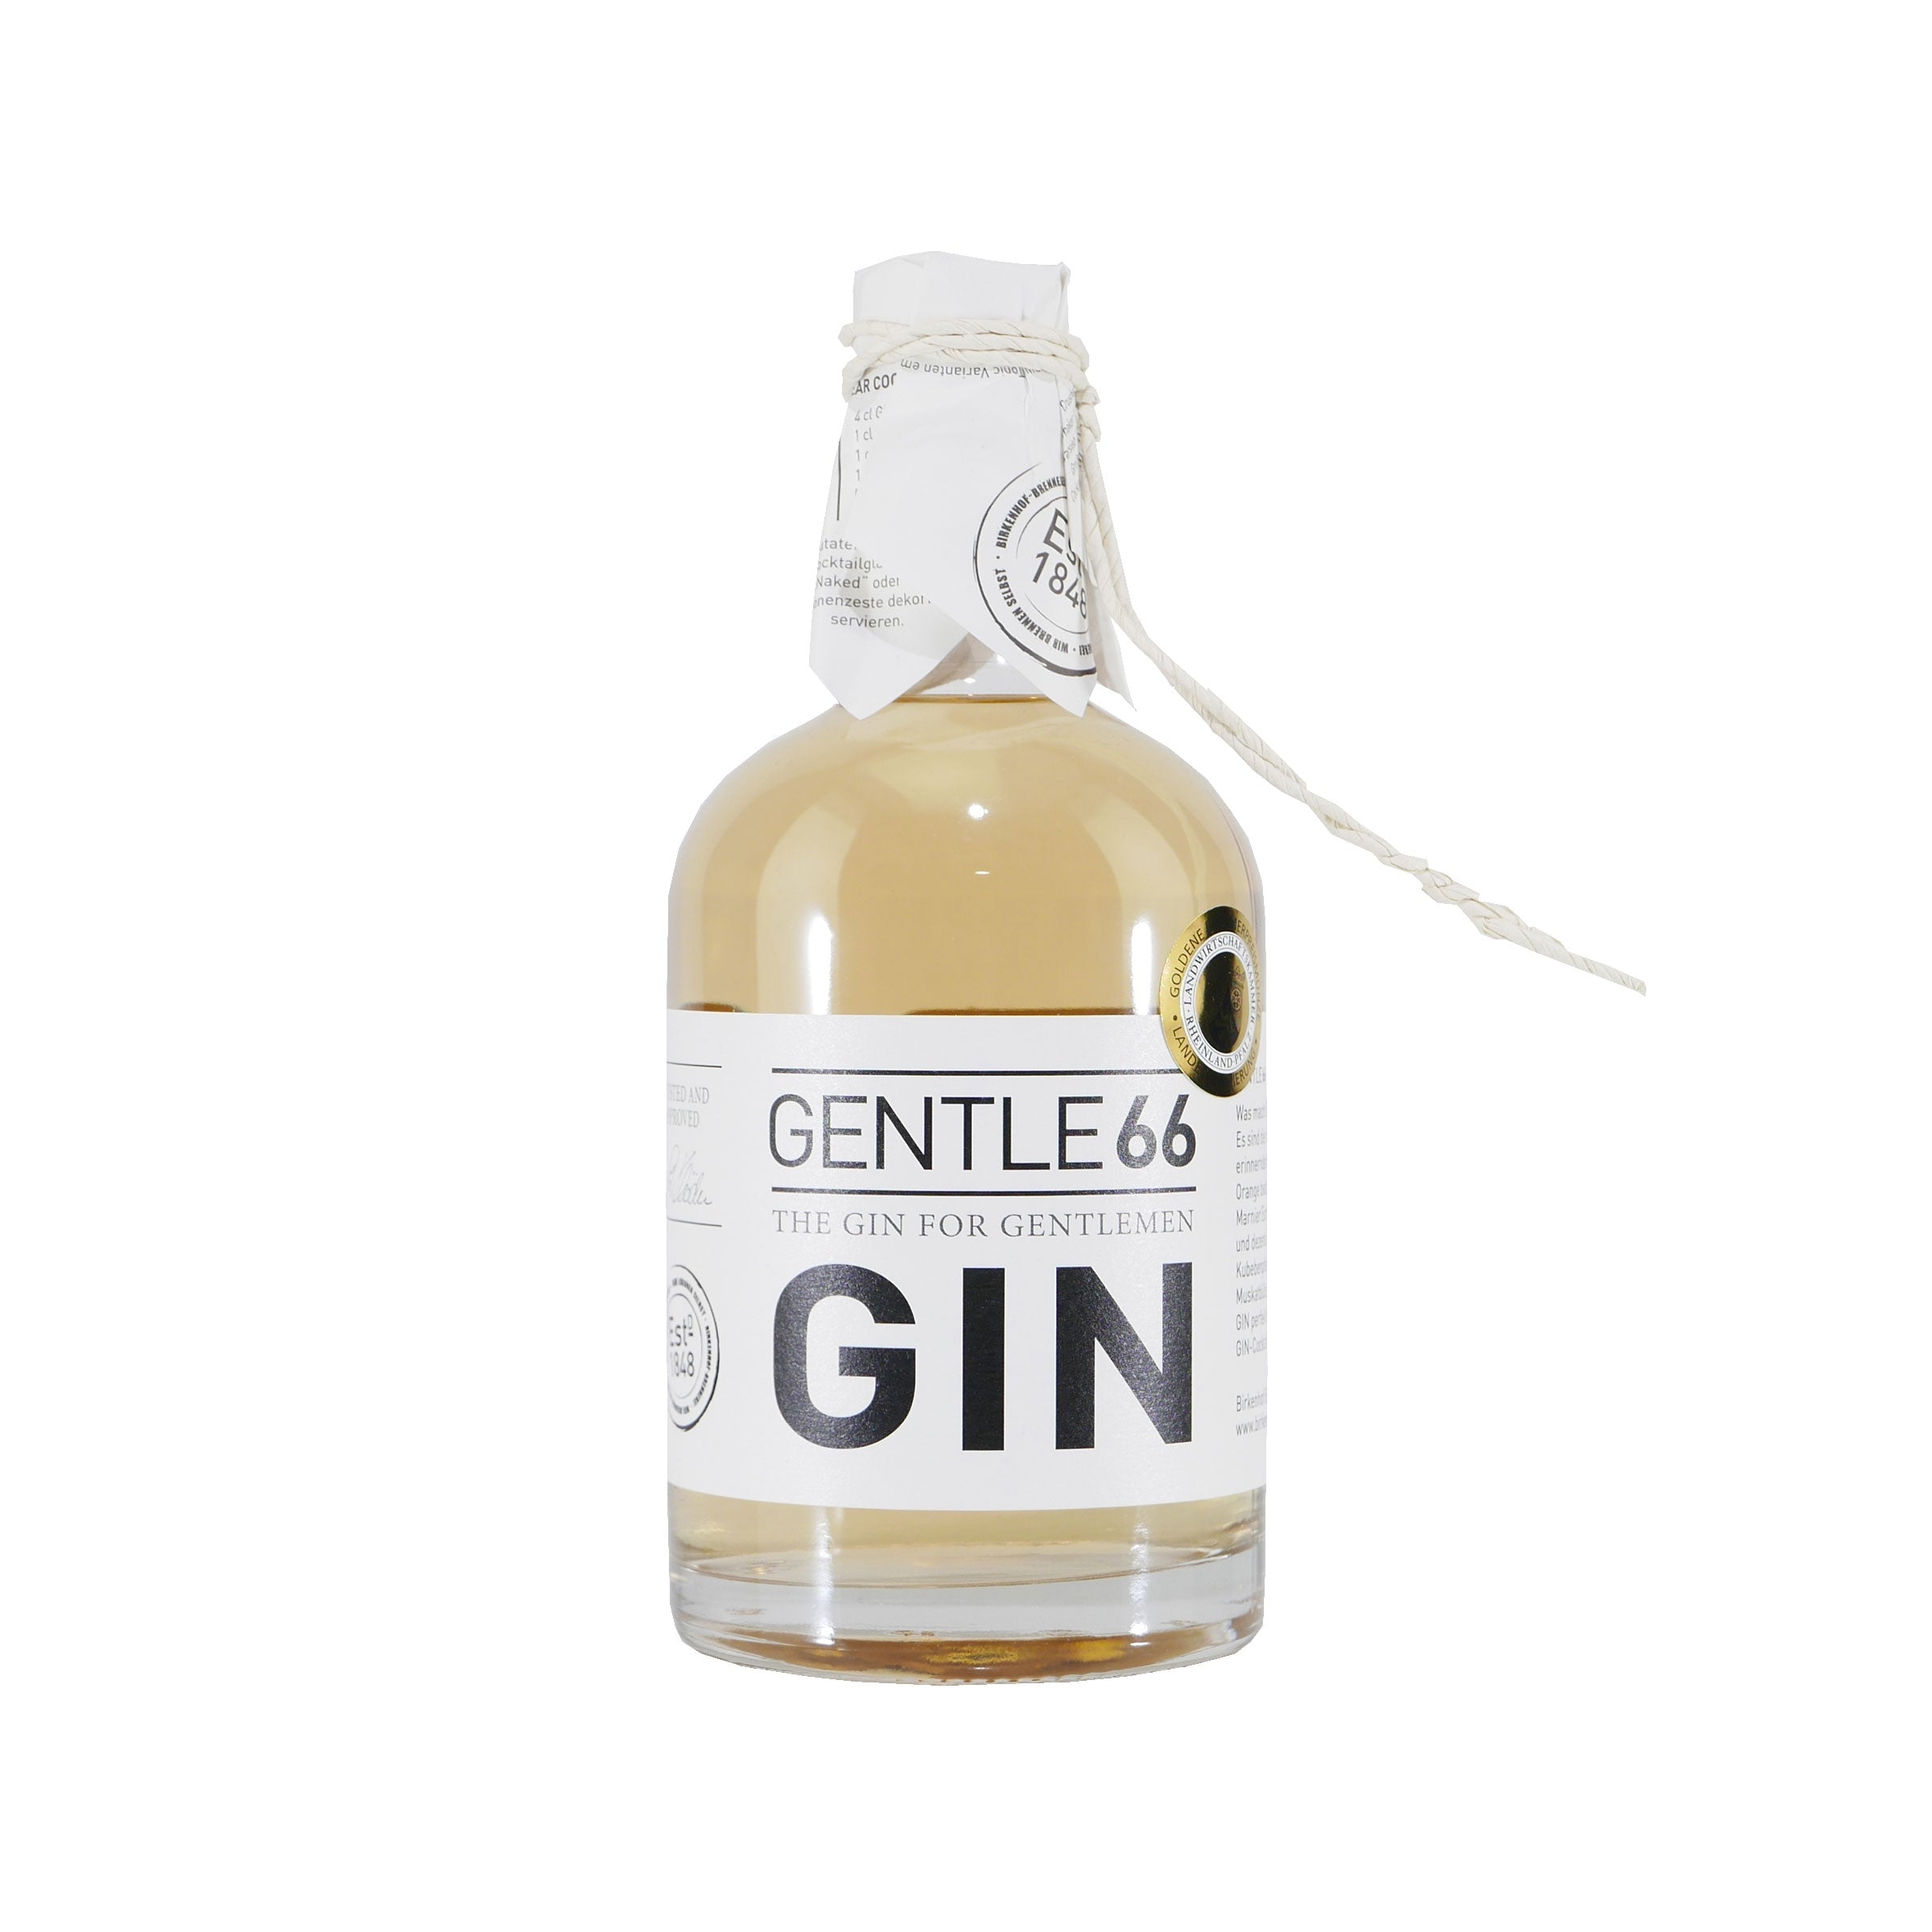 Gentle 66 – The Gin for Gentlemen